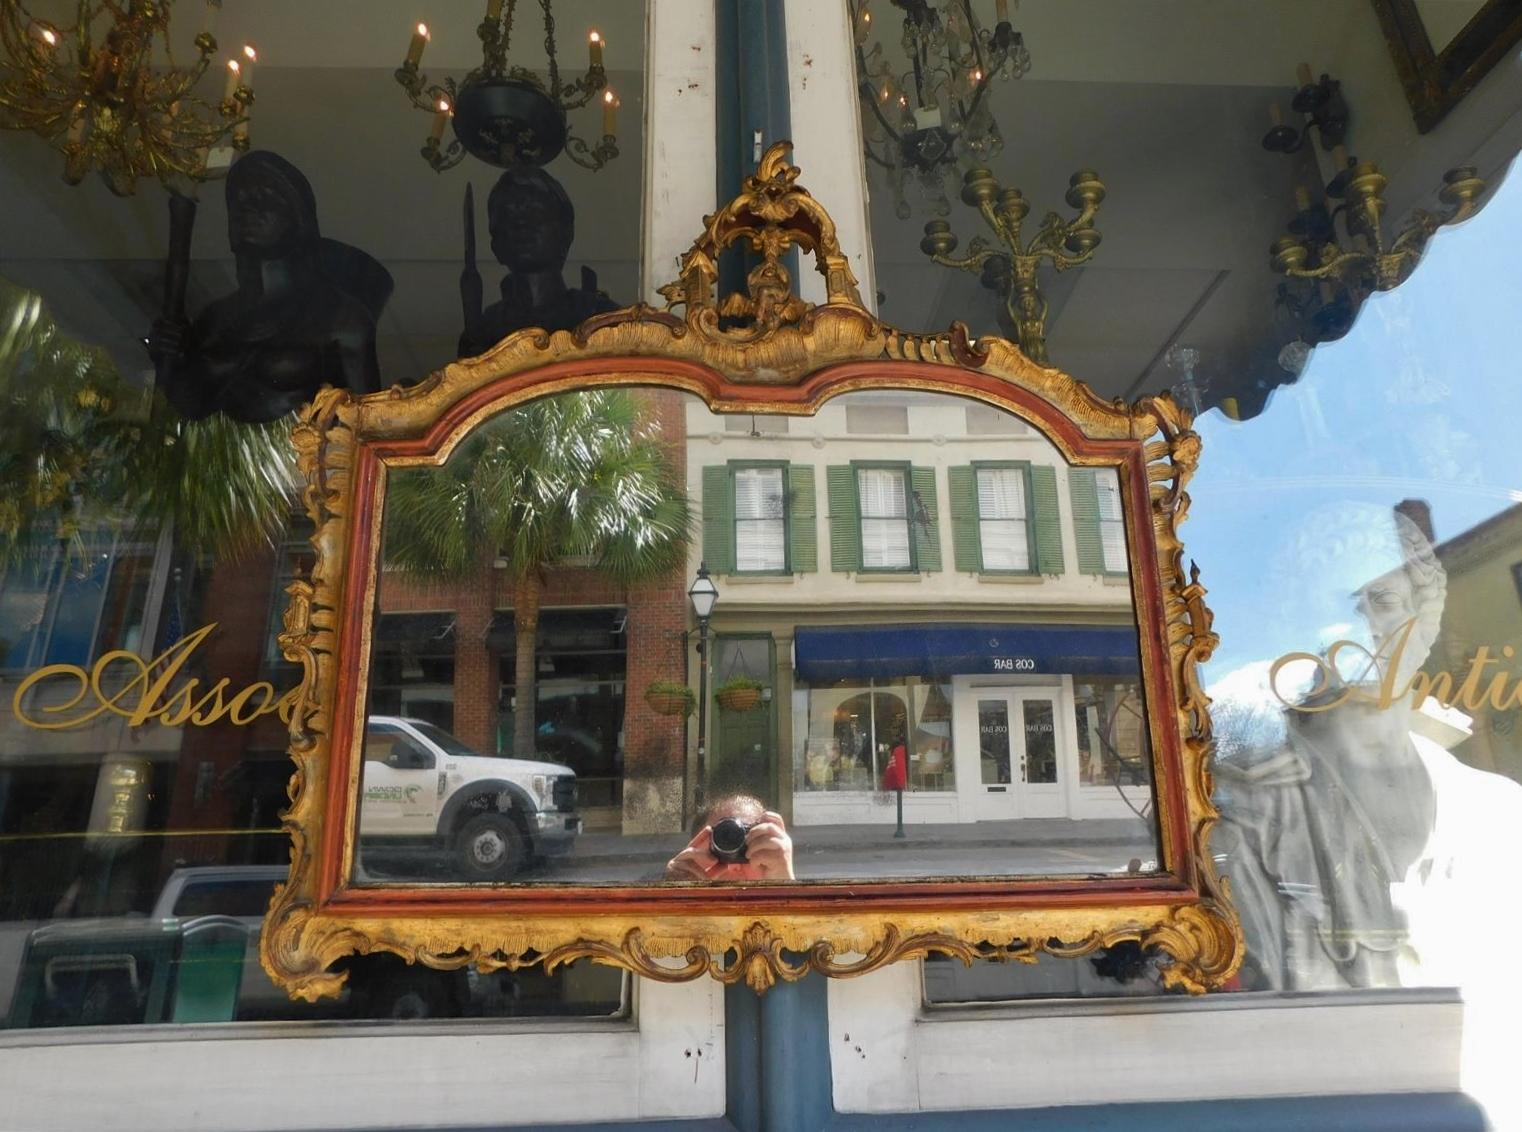 Venezianische Figural Pagode Crest vergoldet geschnitztem Holz und Gesso rot lackiert gescrollt Laub Wandspiegel. Der Spiegel behält das Originalglas und die Holzrückwand. Ende des 18. Jahrhunderts.